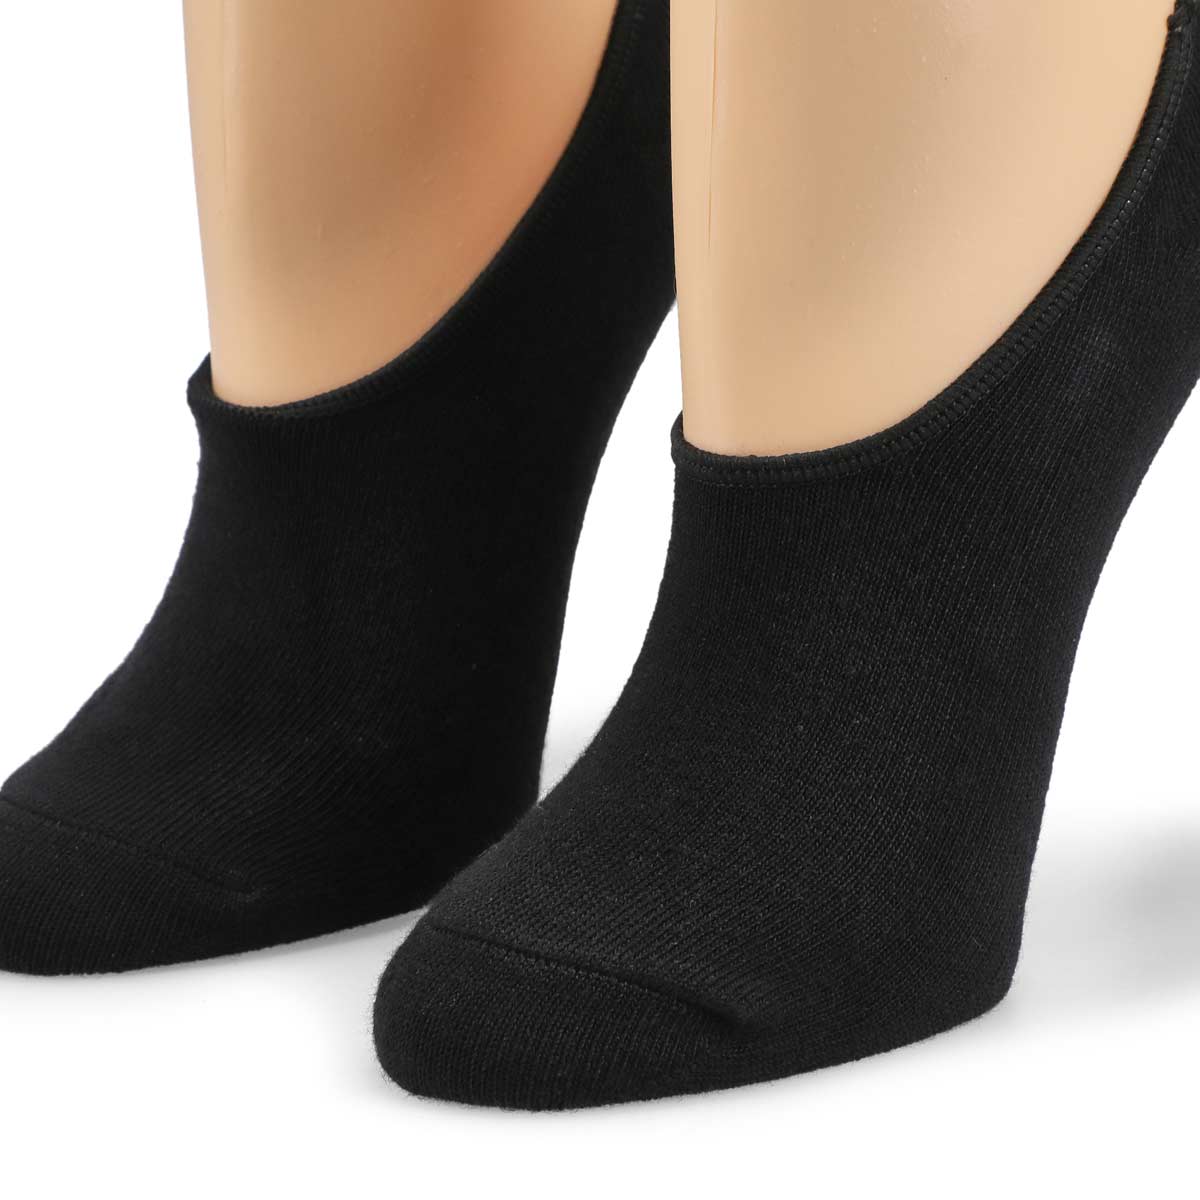 Socquettes sport SOLID, noir, femmes - 6 paires